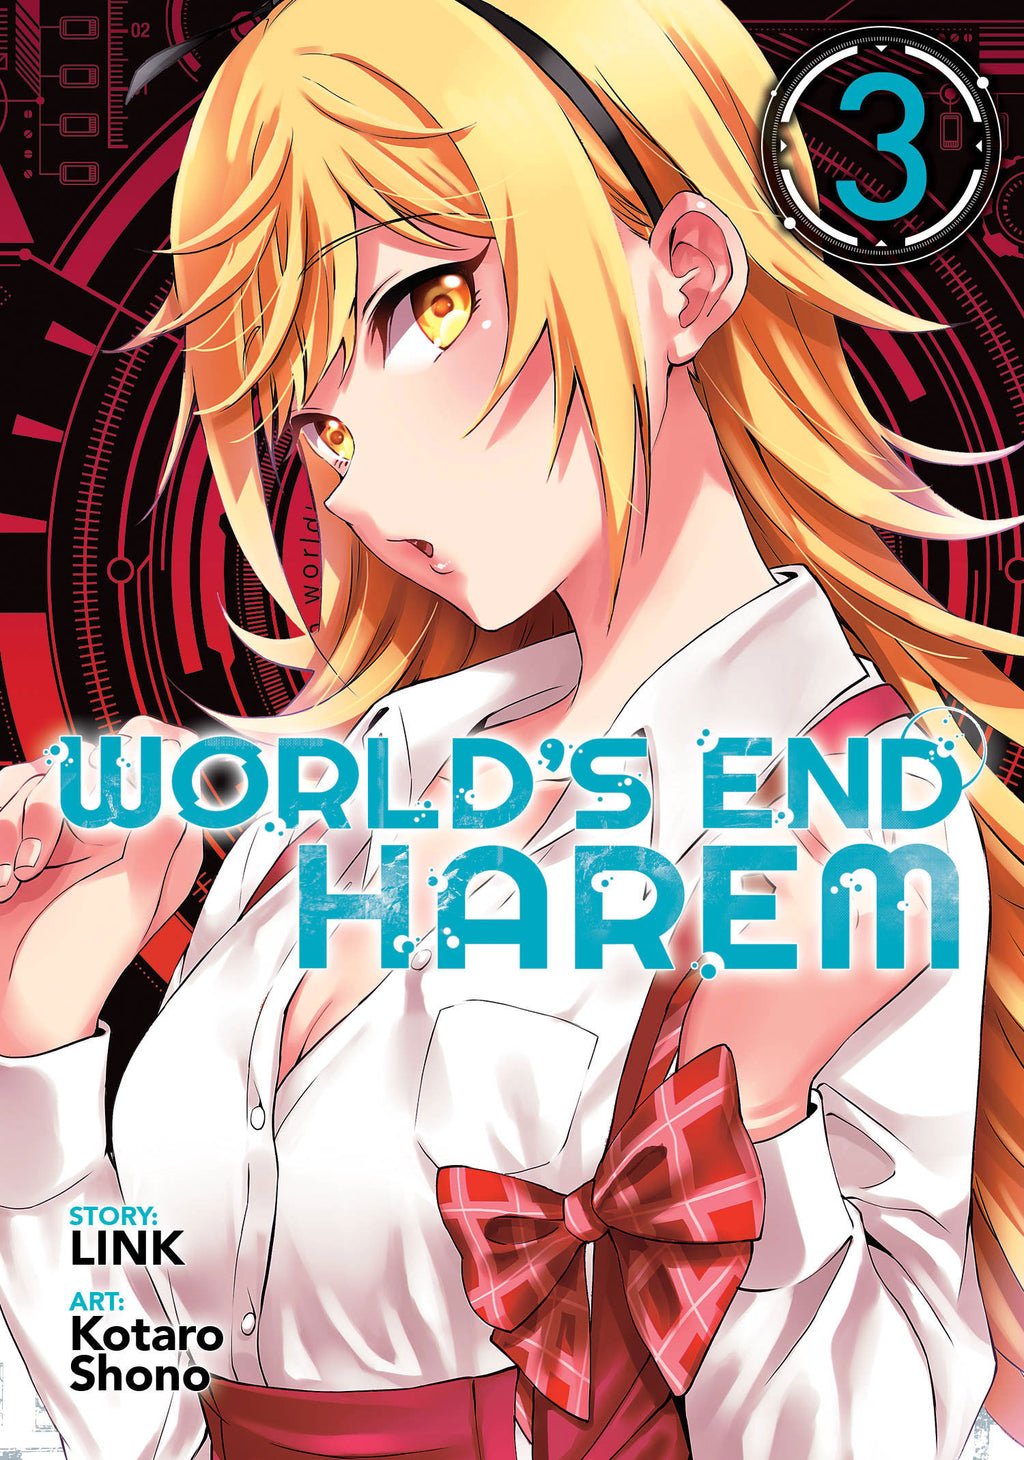 World's End Harem: World's End Harem Vol. 15 - After World (Series